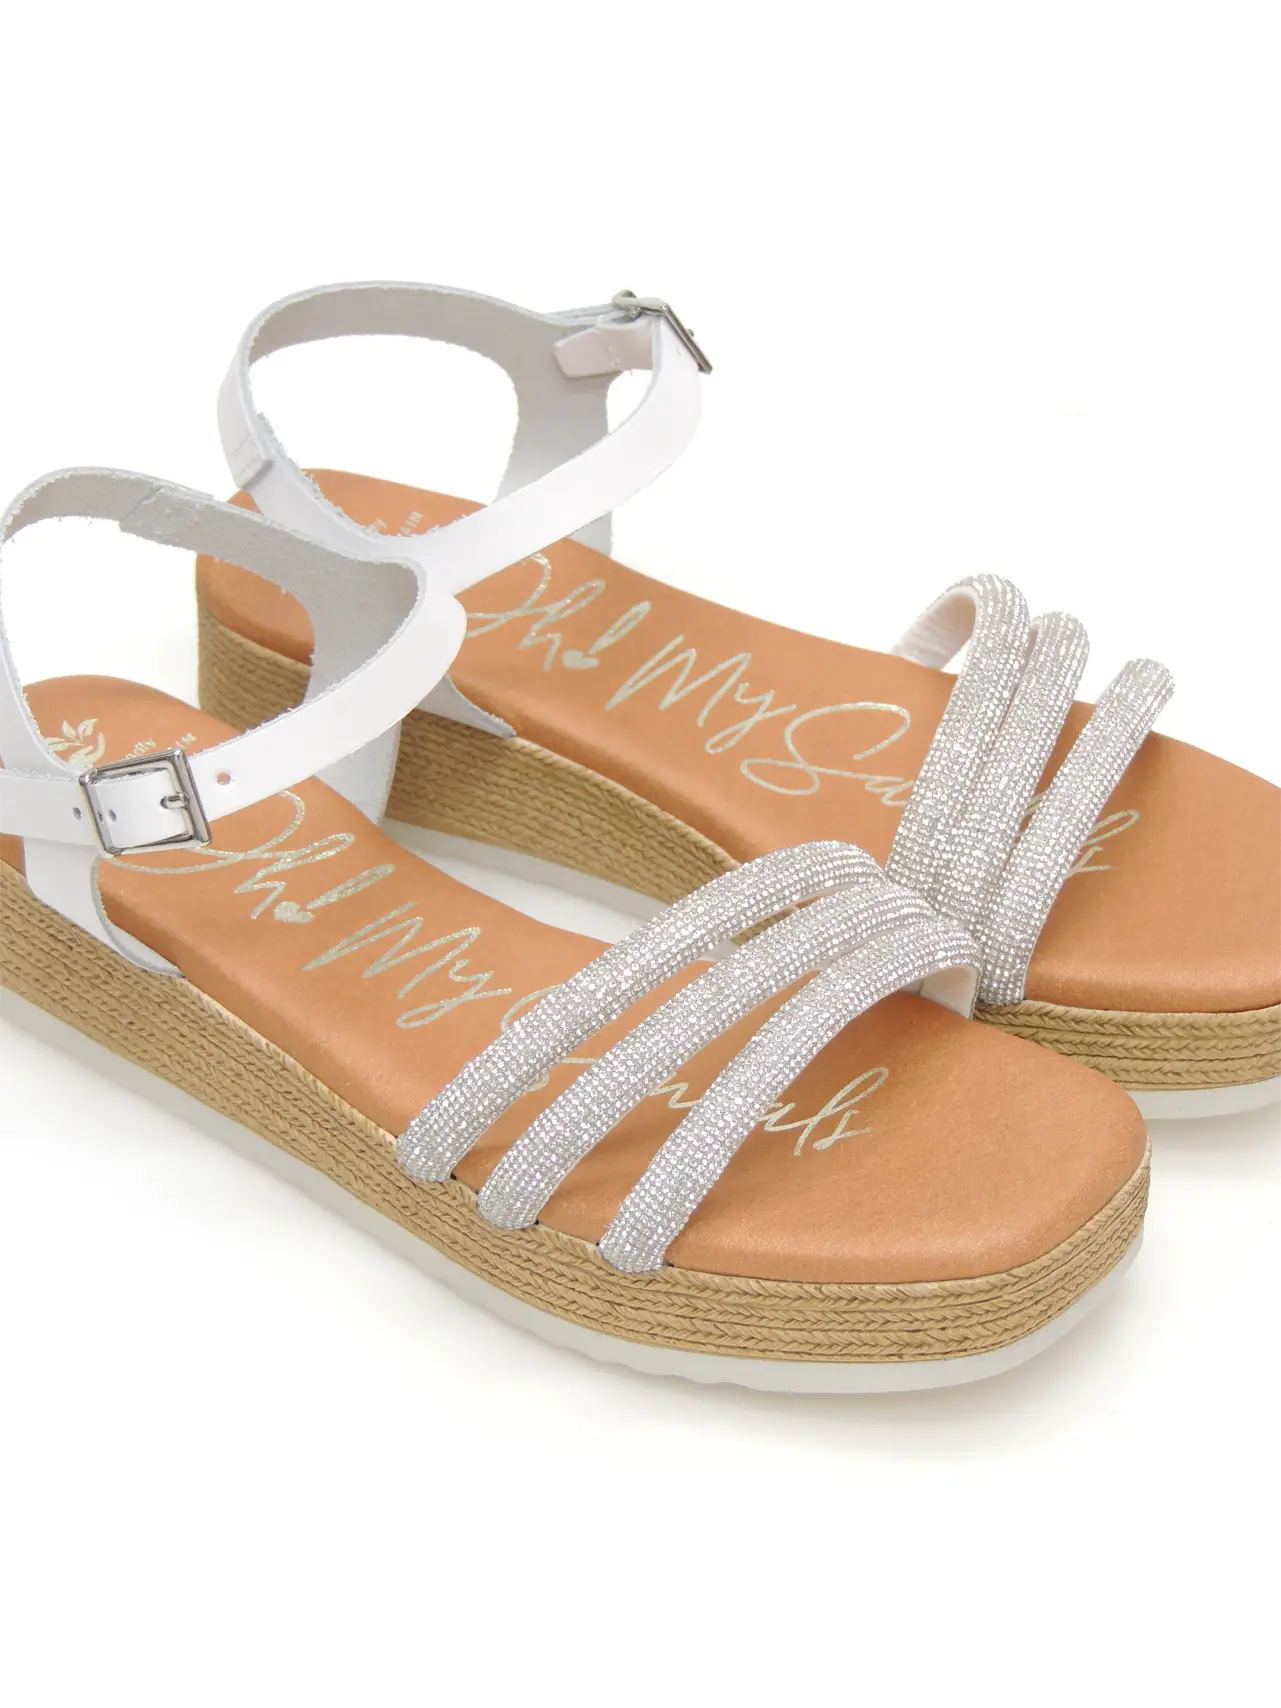 sandalias-plataforma-sandals-5434-piel-blanco